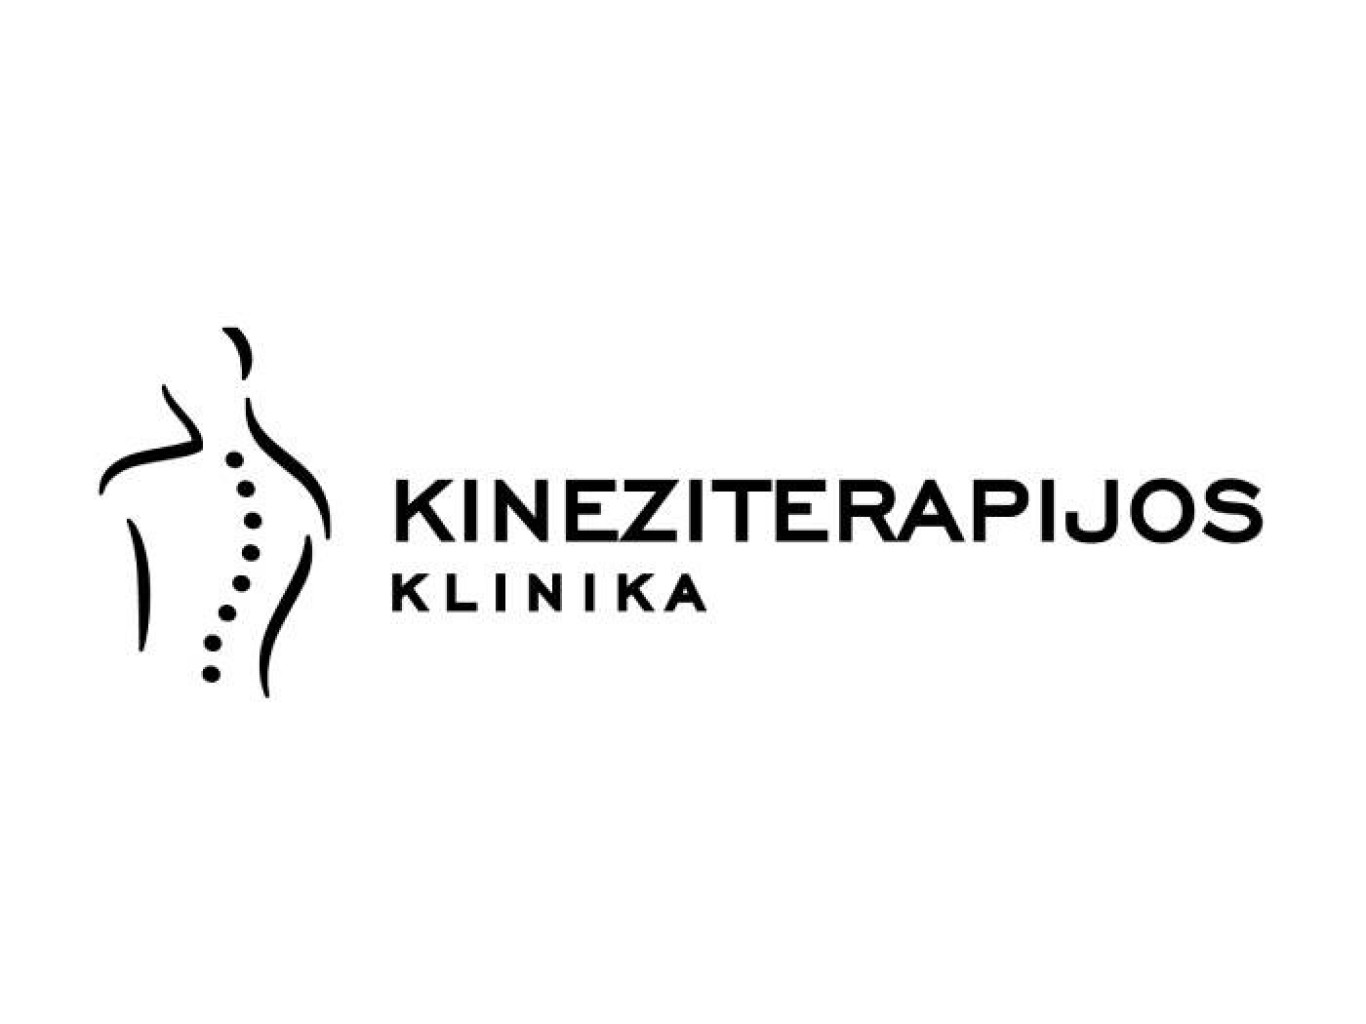 Pirminė kineziterapeuto konsultacija – funkcinis ištyrimas ir gydymas